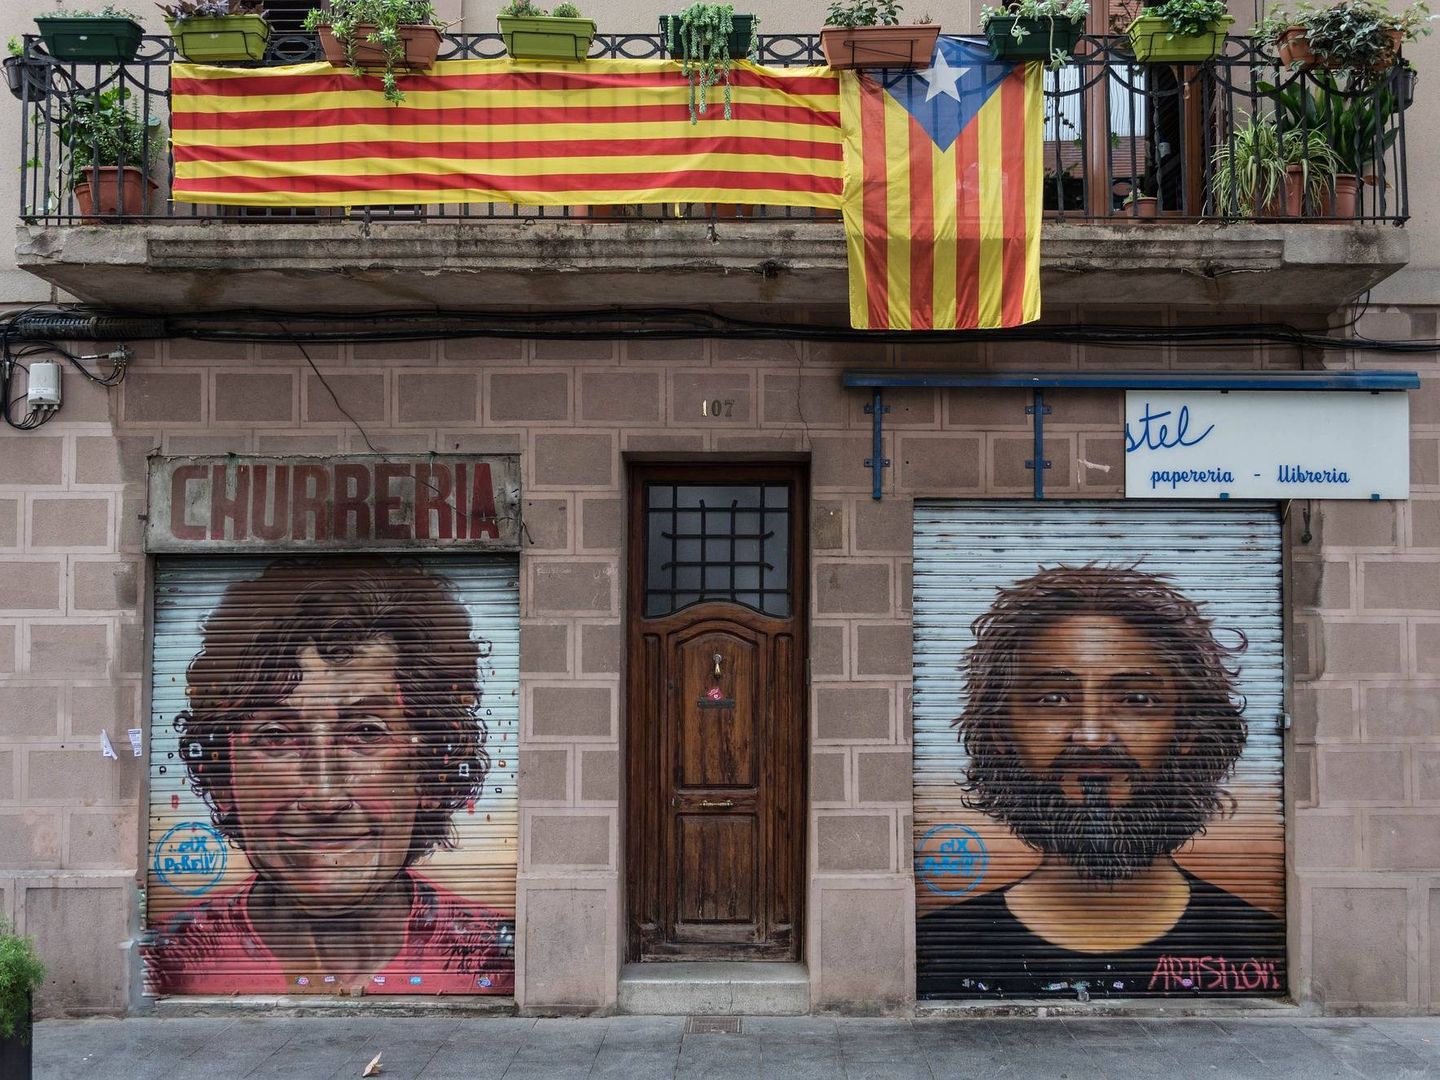 Una churrería y una papelería en una calle de Barcelona. (Pixabay)